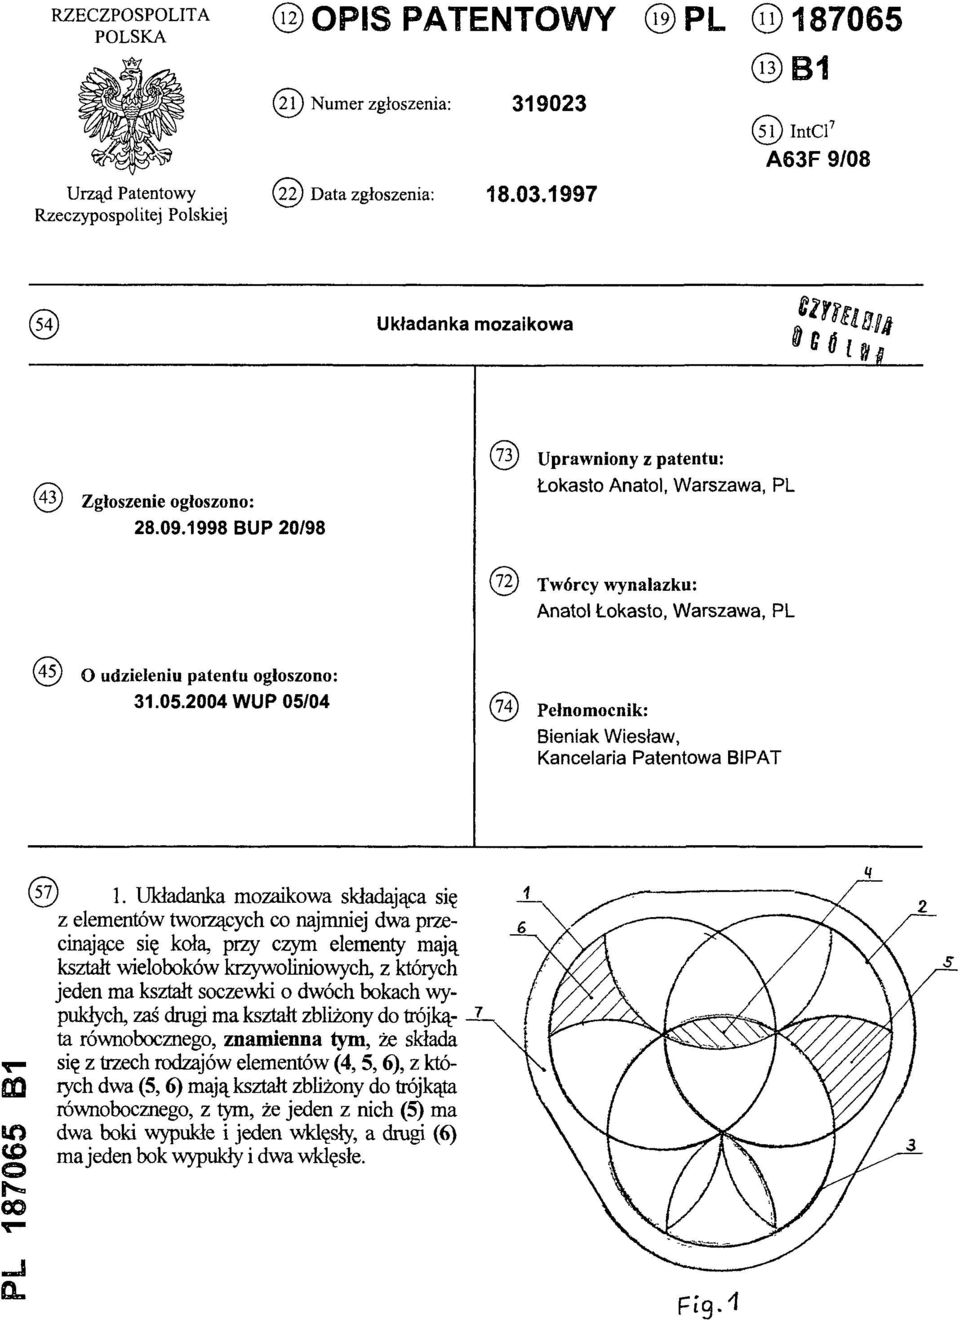 1998 BUP 20/98 (73) Uprawniony z patentu: Łokasto Anatol, Warszawa, PL (72) Twórcy wynalazku: Anatol Łokasto, Warszawa, PL (45) O udzieleniu patentu ogłoszono: 31.05.